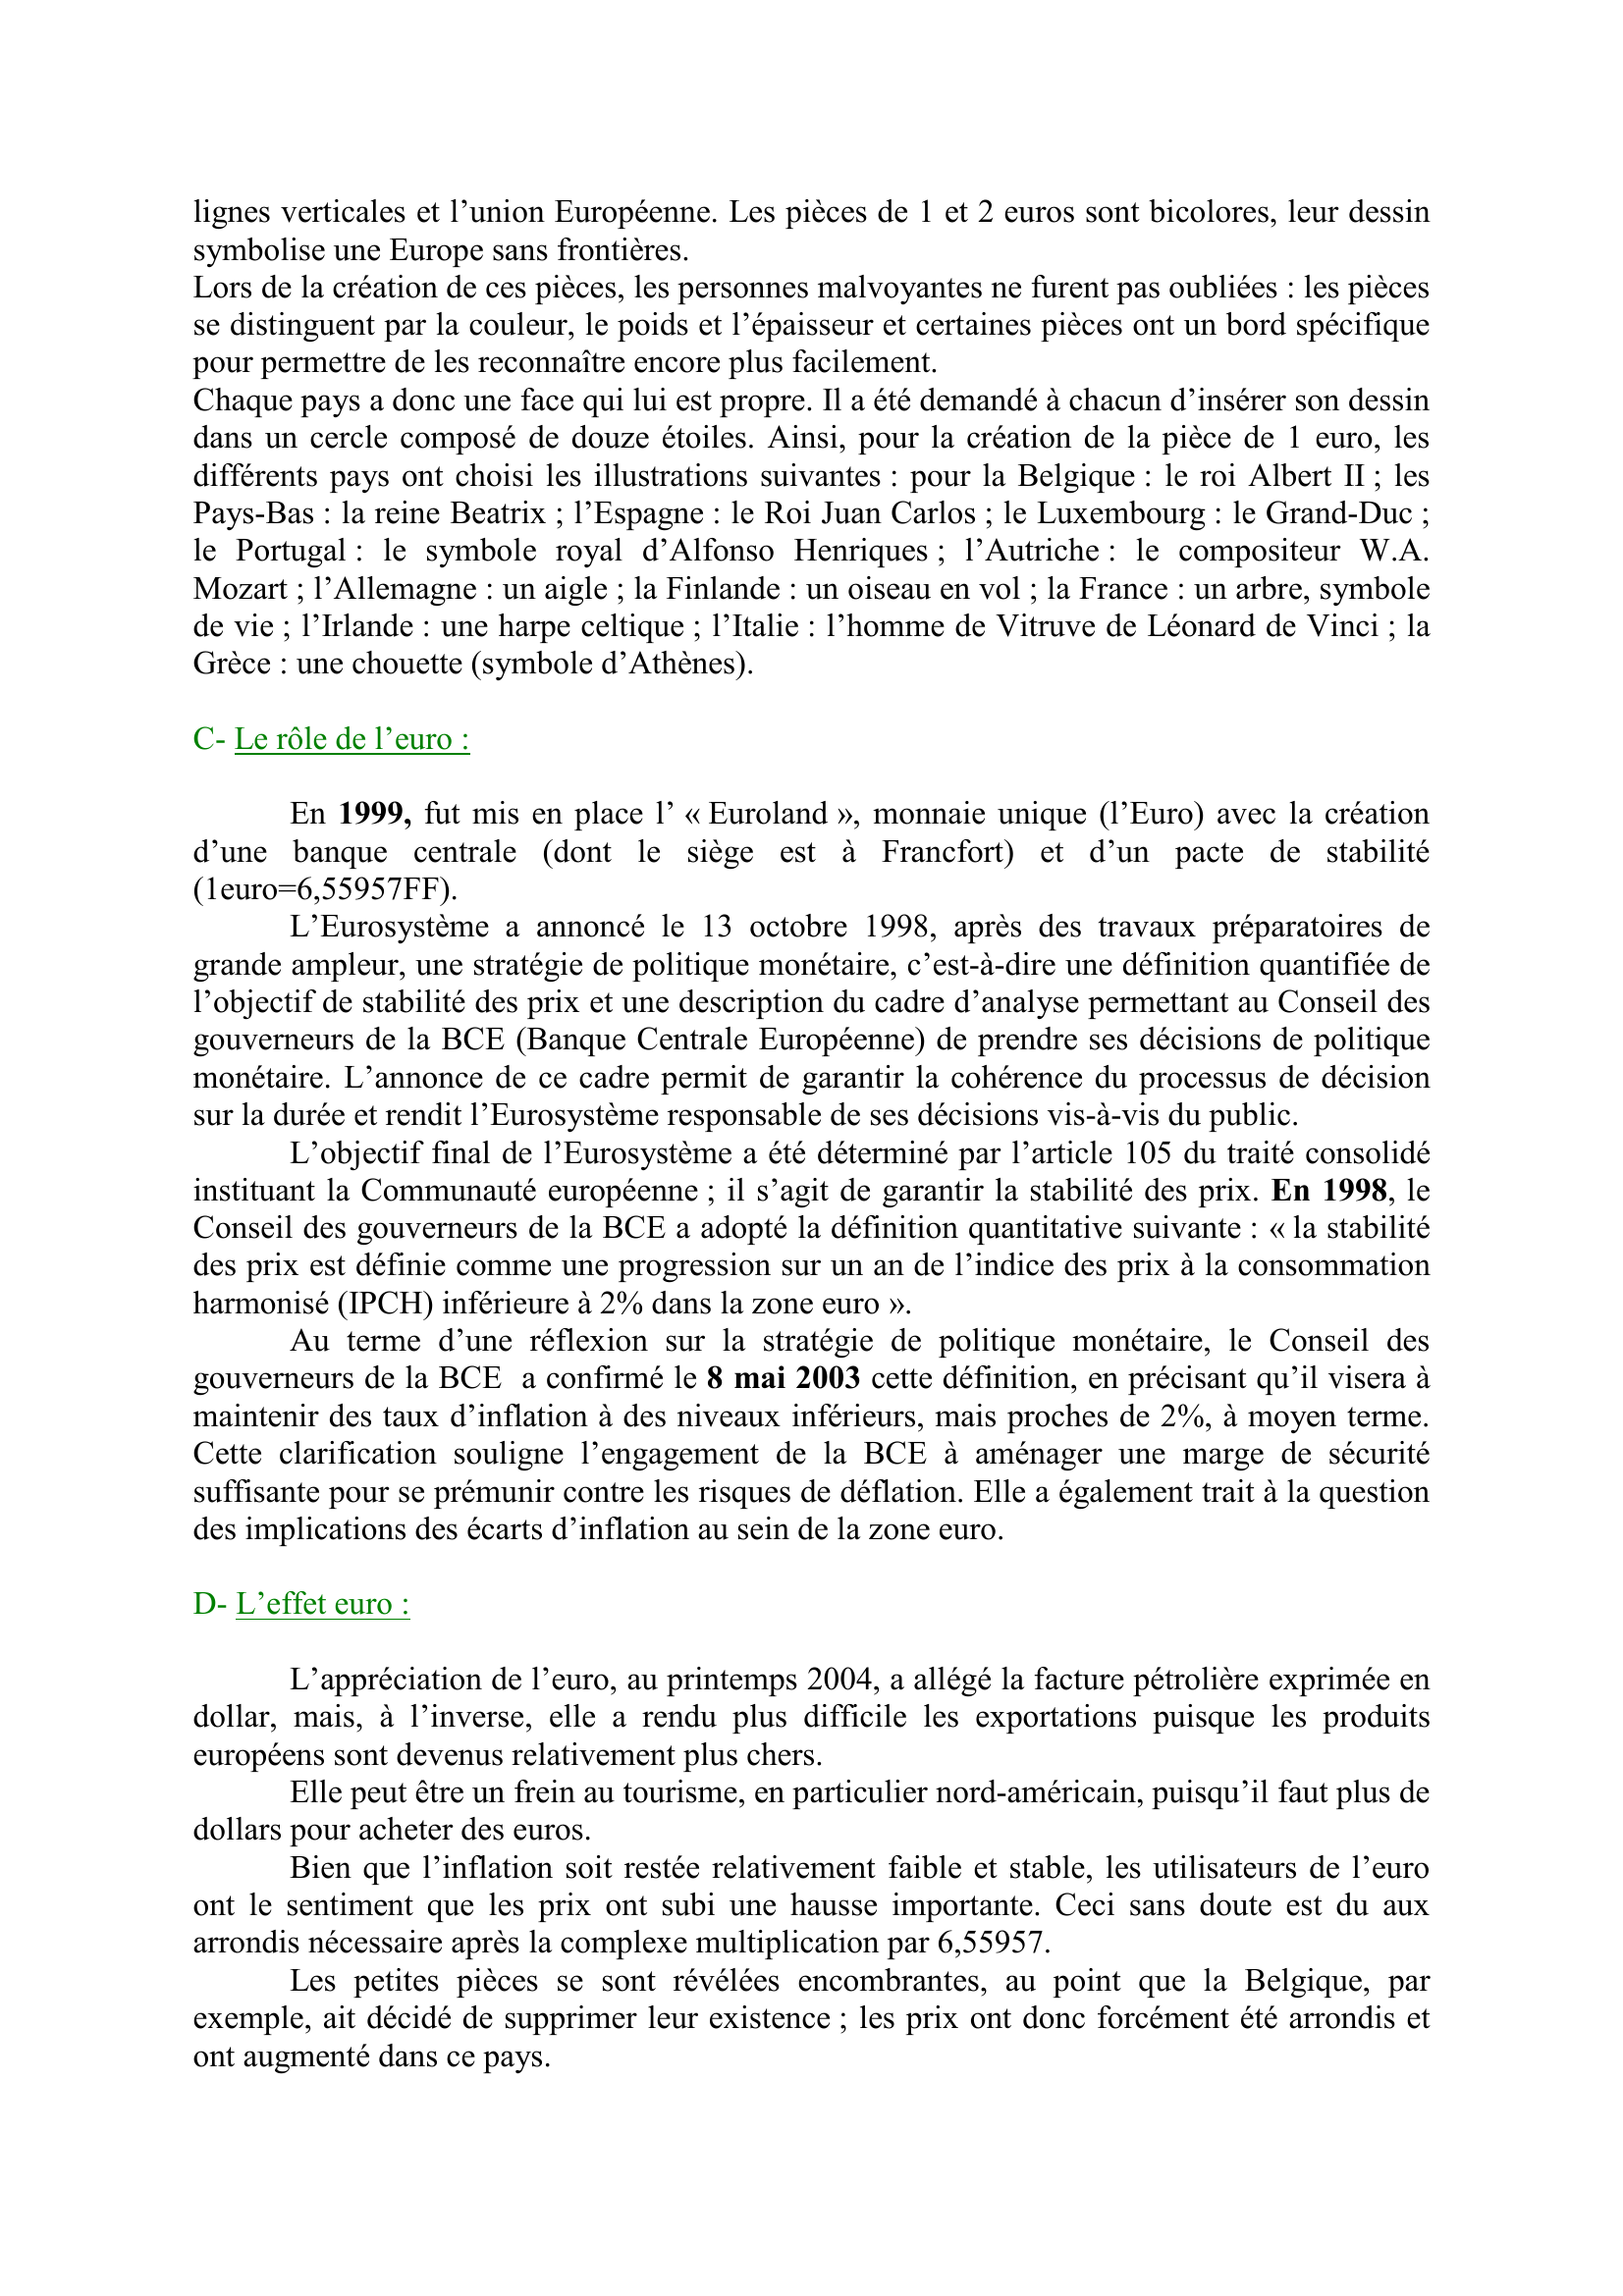 Prévisualisation du document L'EURO
Fiche composée par sylvain
sylvain.